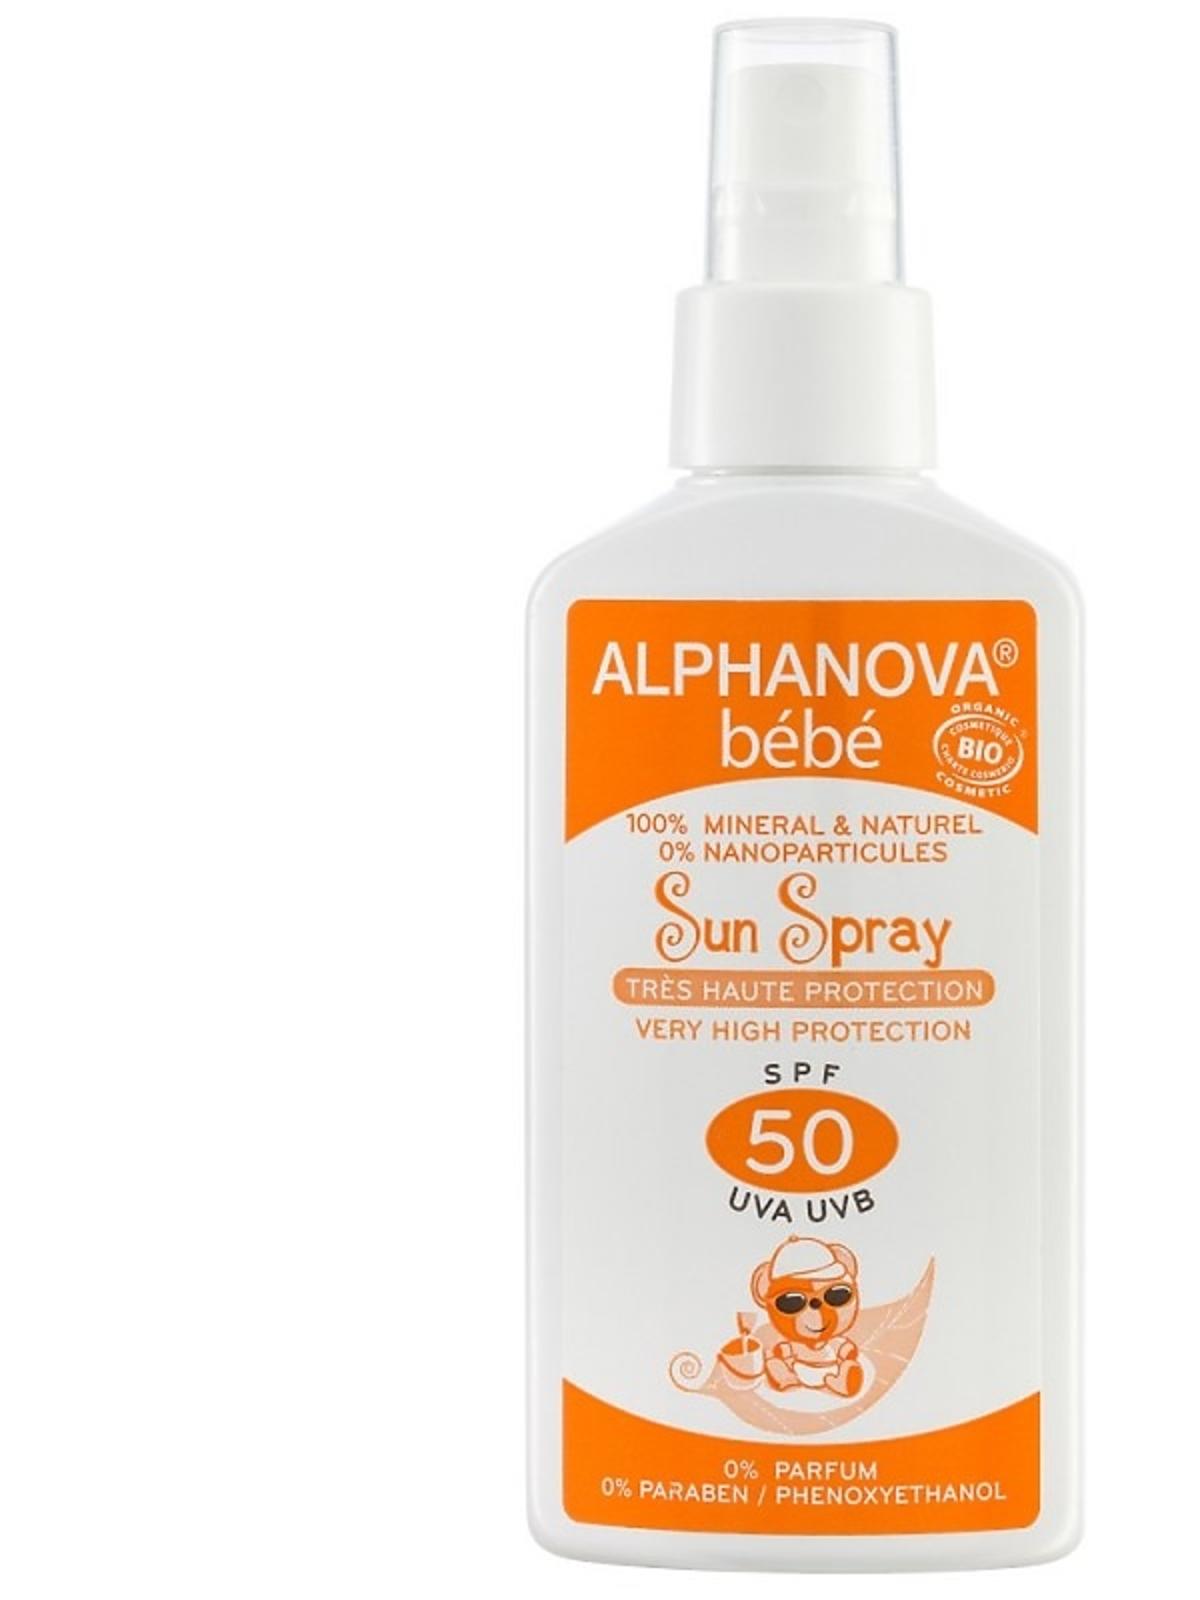 alphanova-bebe-przeciwsloneczny-spray-o-wysokim-filtrze-spf-50.jpg